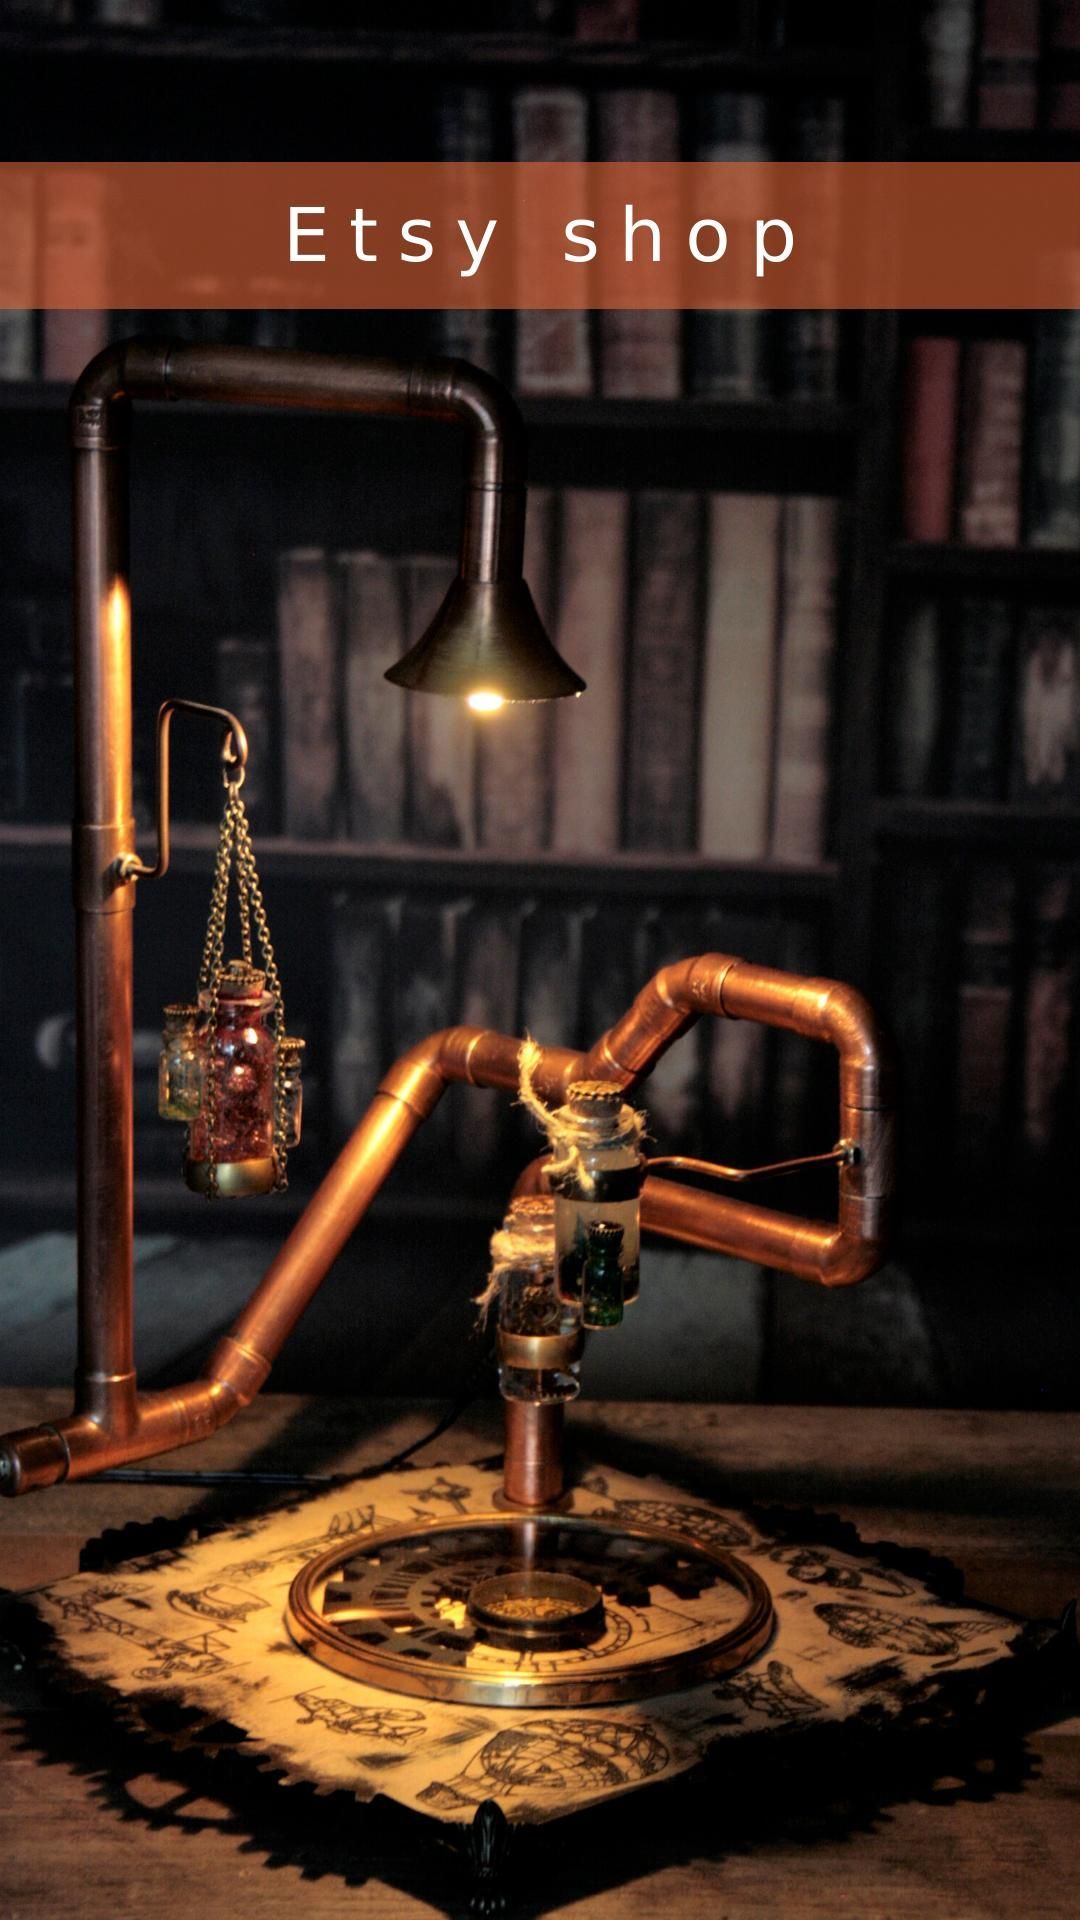 Steampunk lamp Jules Verne/Industrial desk lampr -   diy Lamp videos